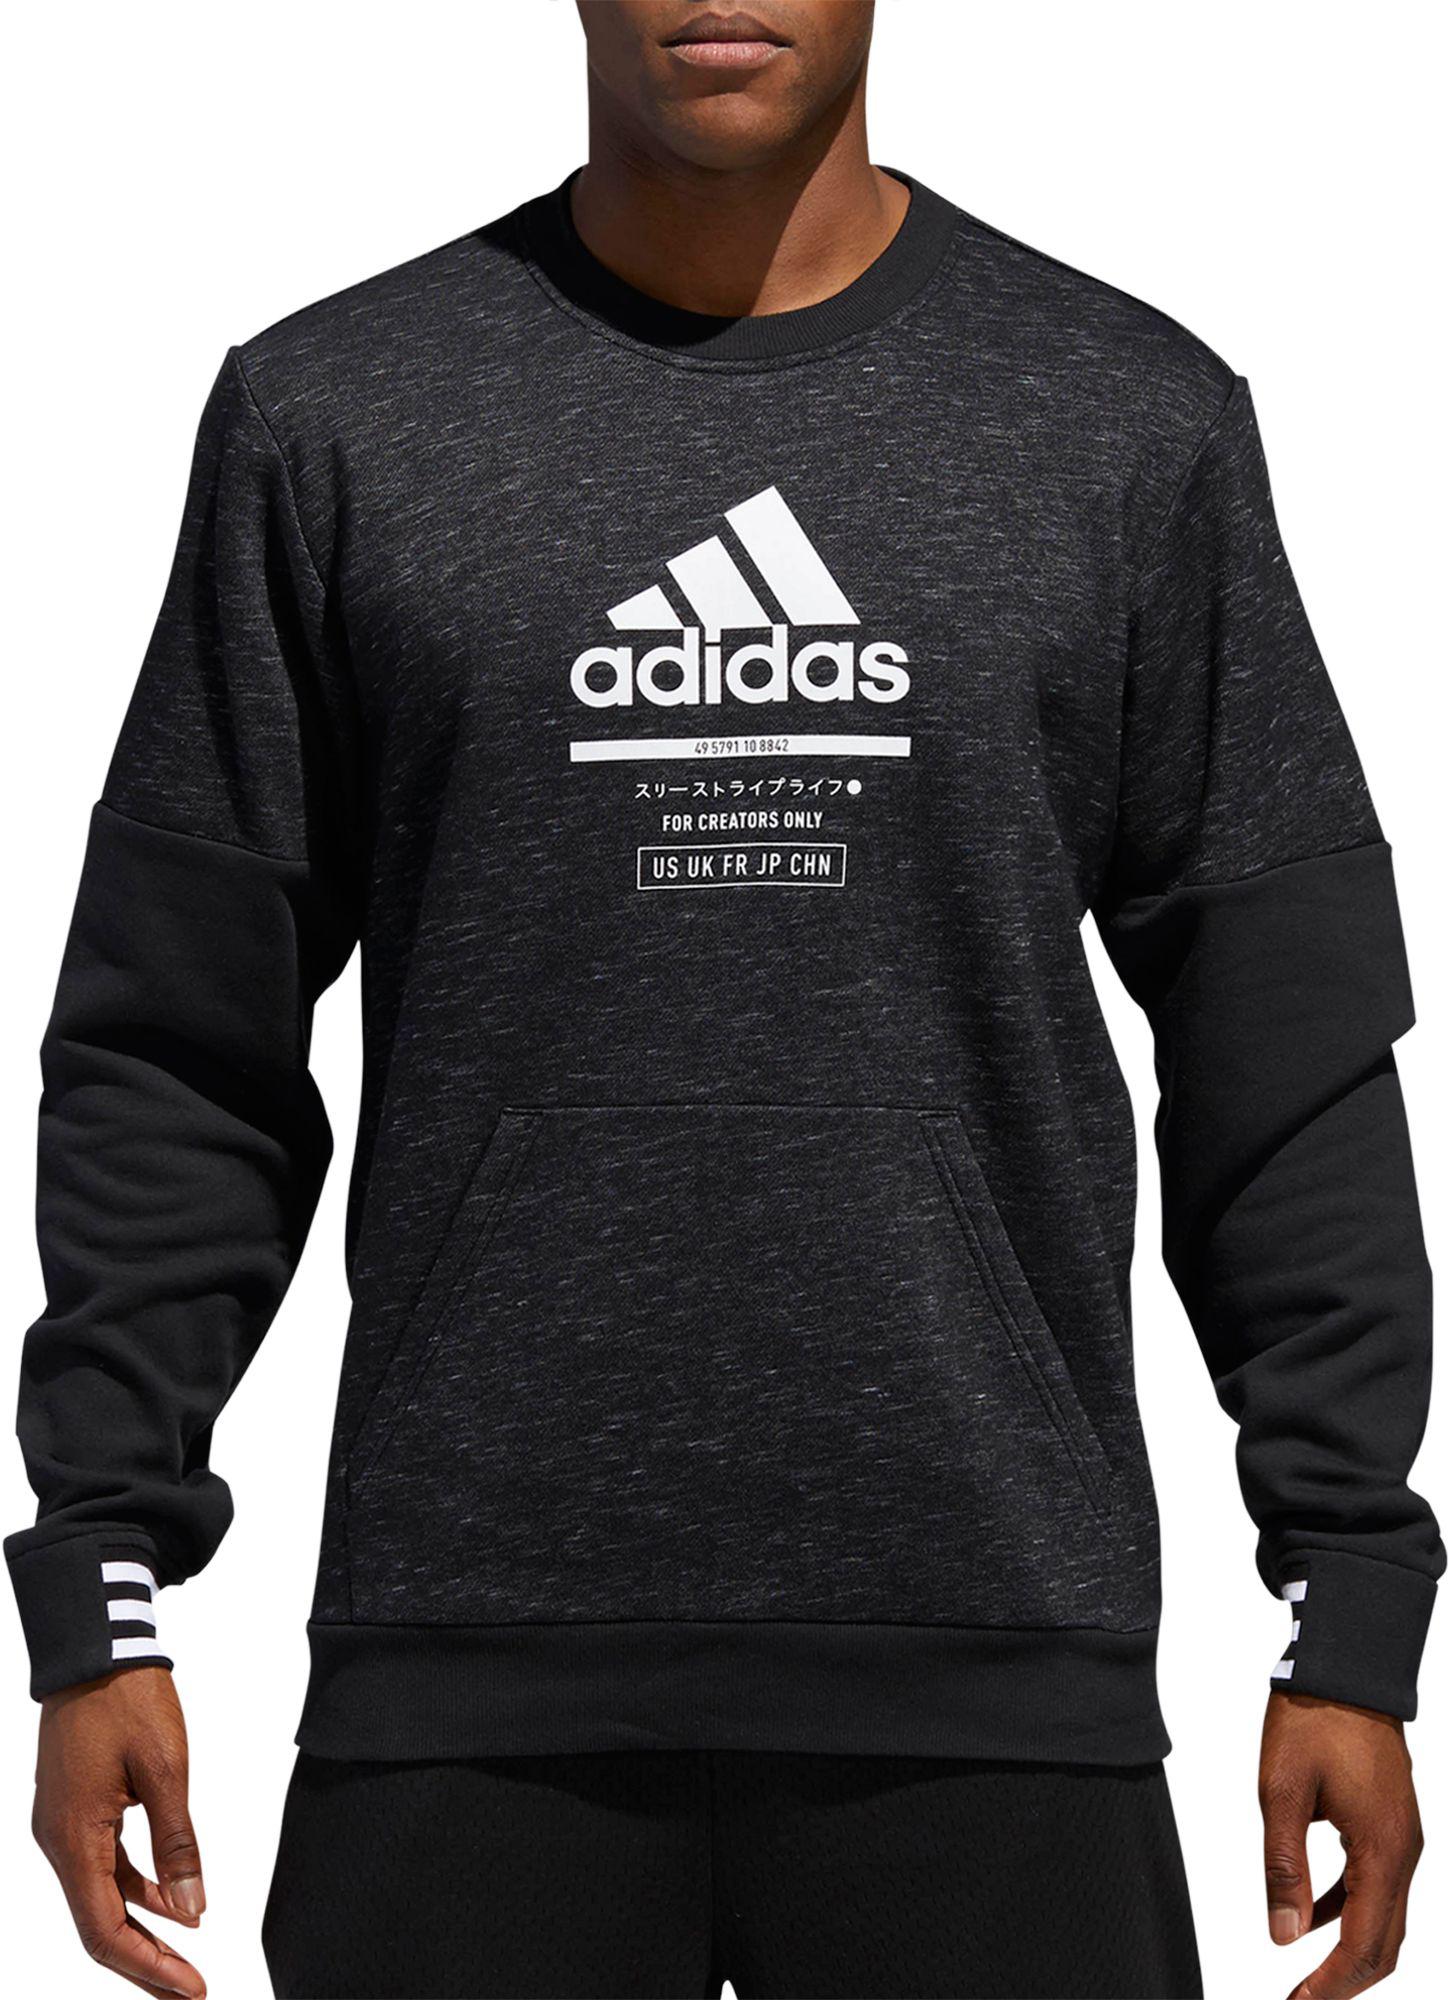 adidas men's post game crew sweatshirt